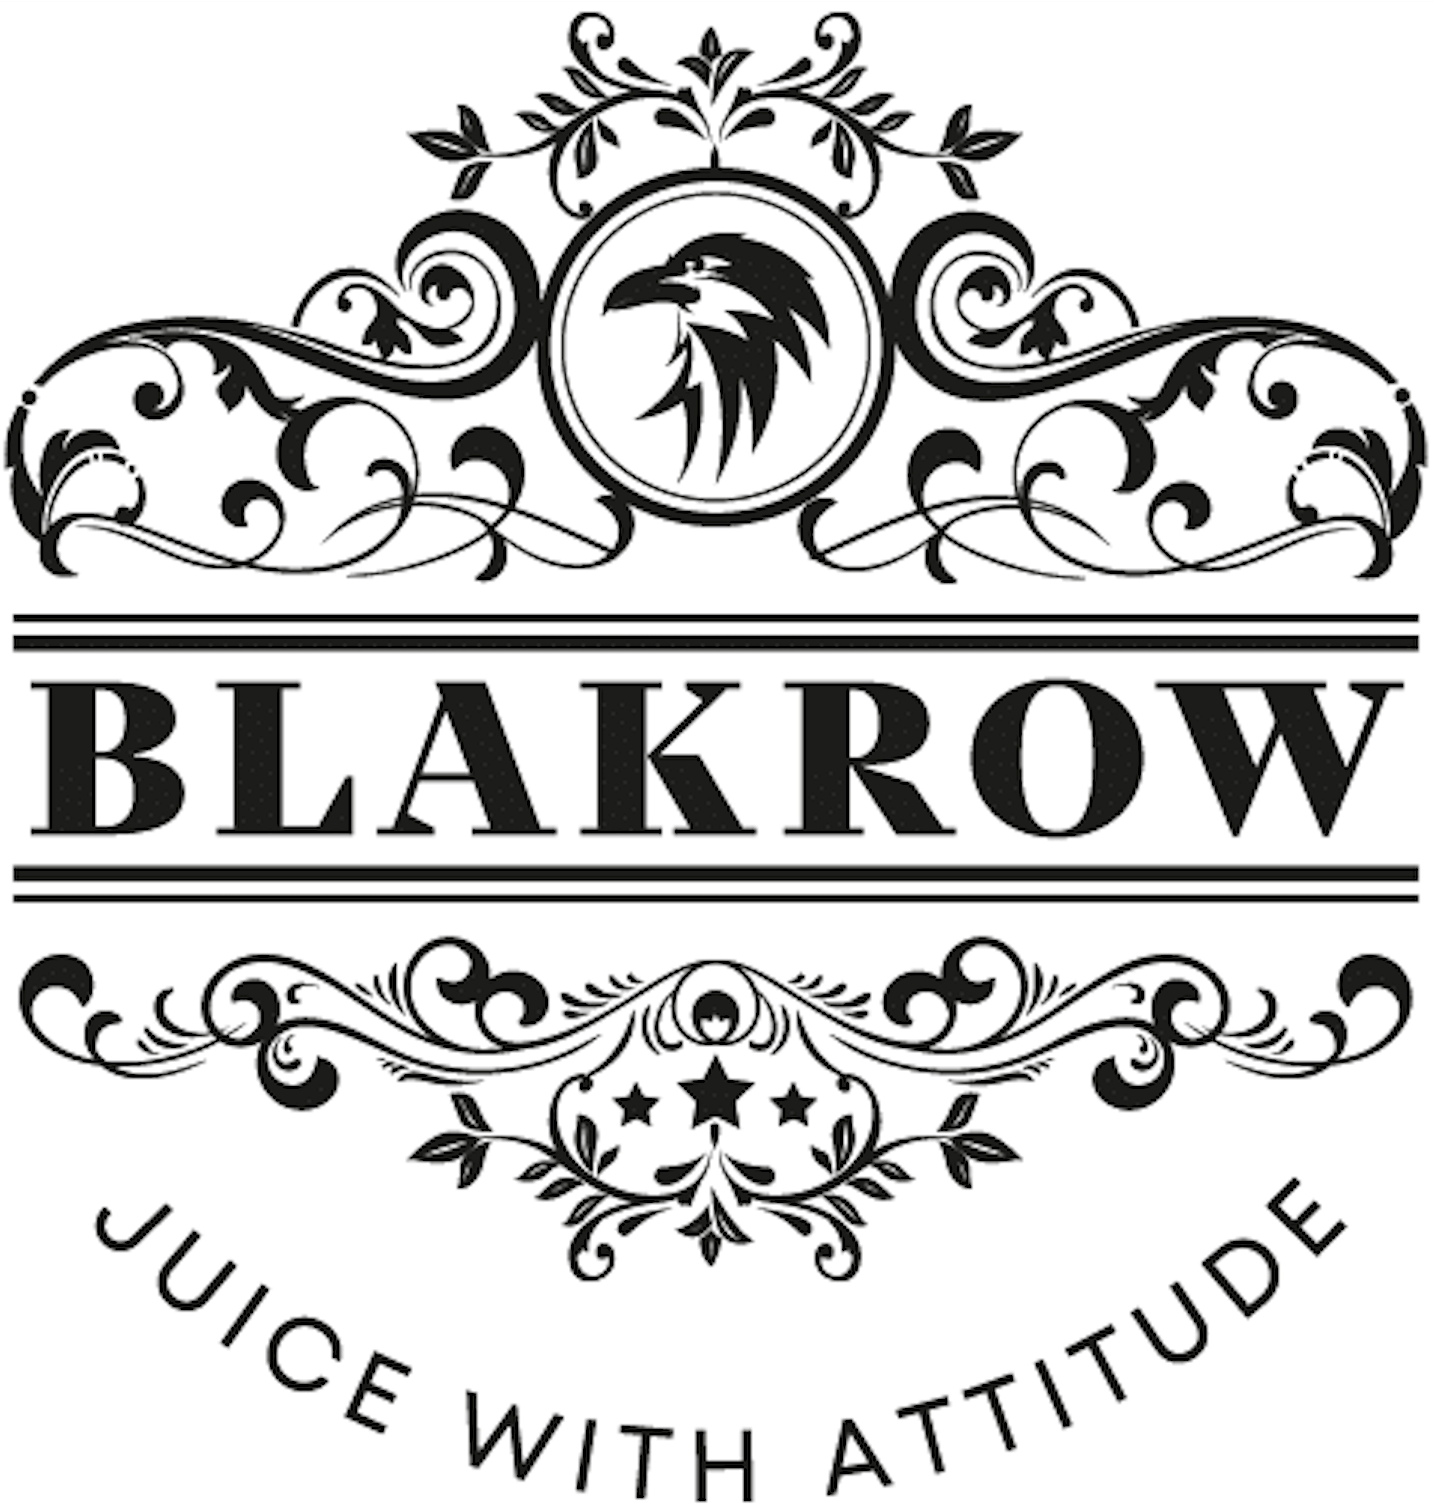 Blakrow - E-liquide